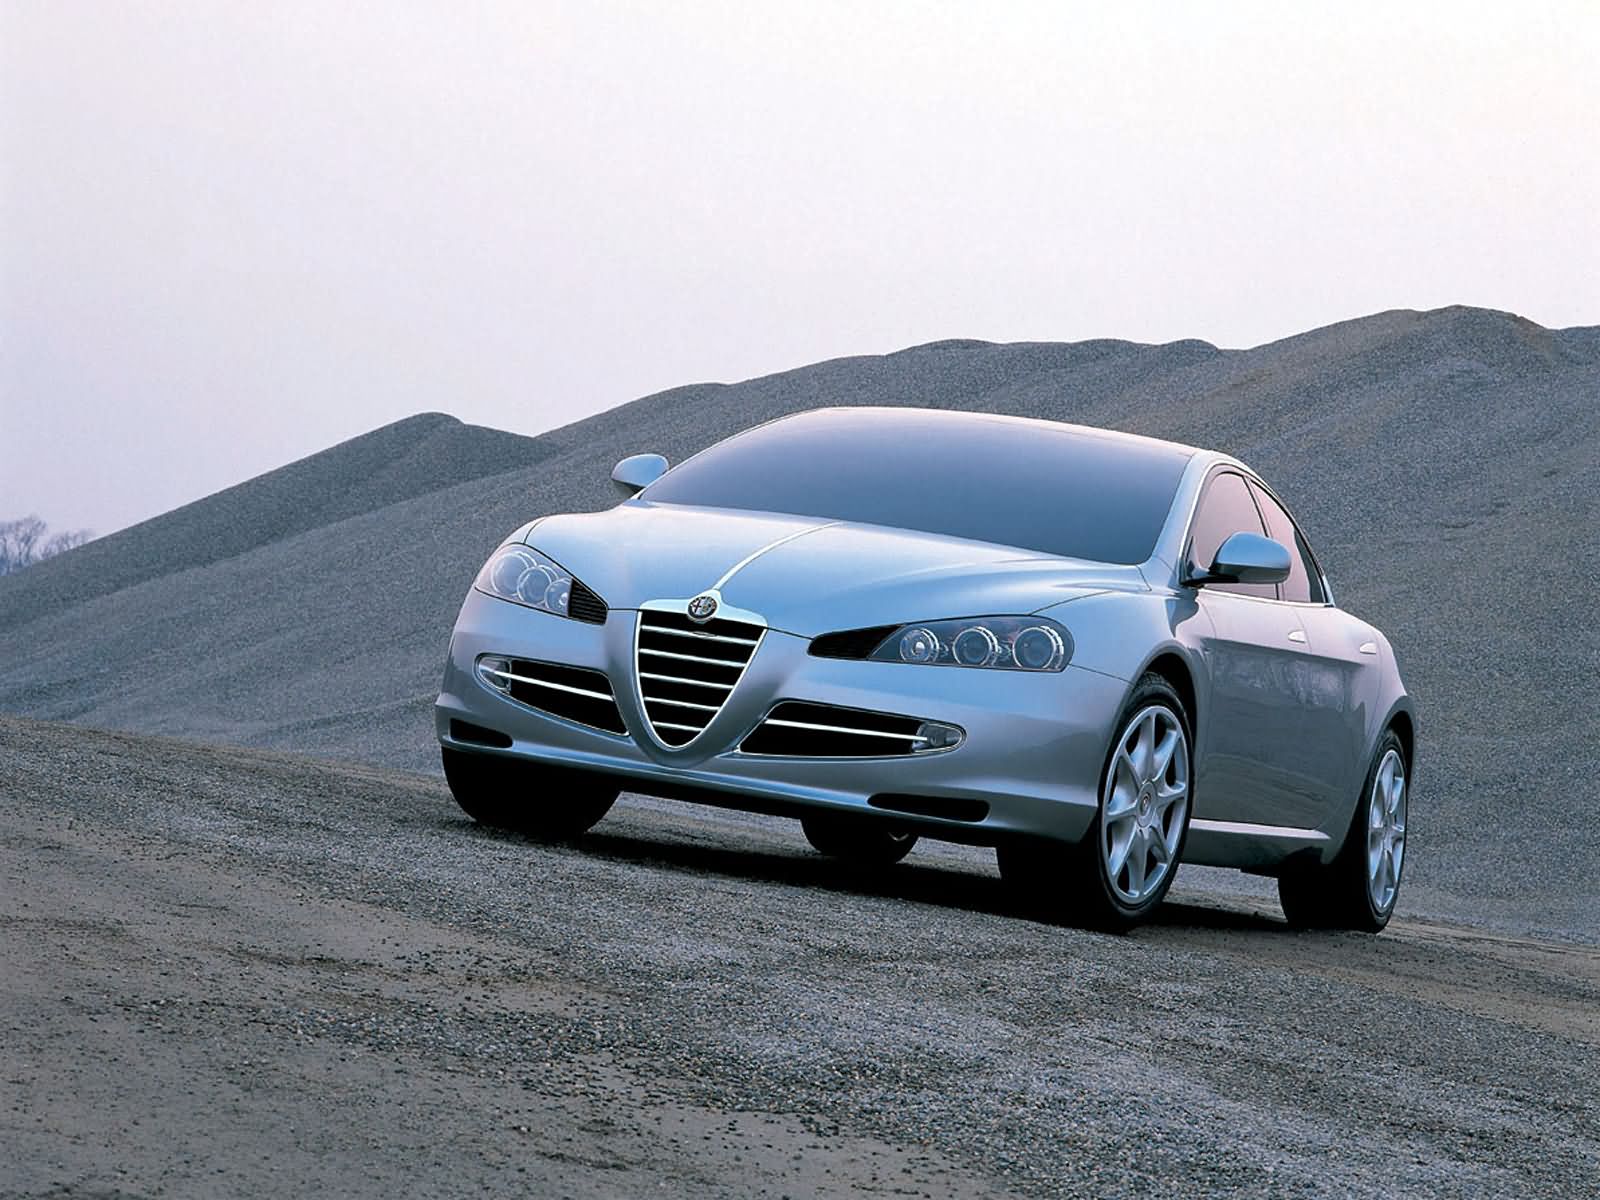 2004 Alfa Romeo Visconti (ItalDesign) - Studios